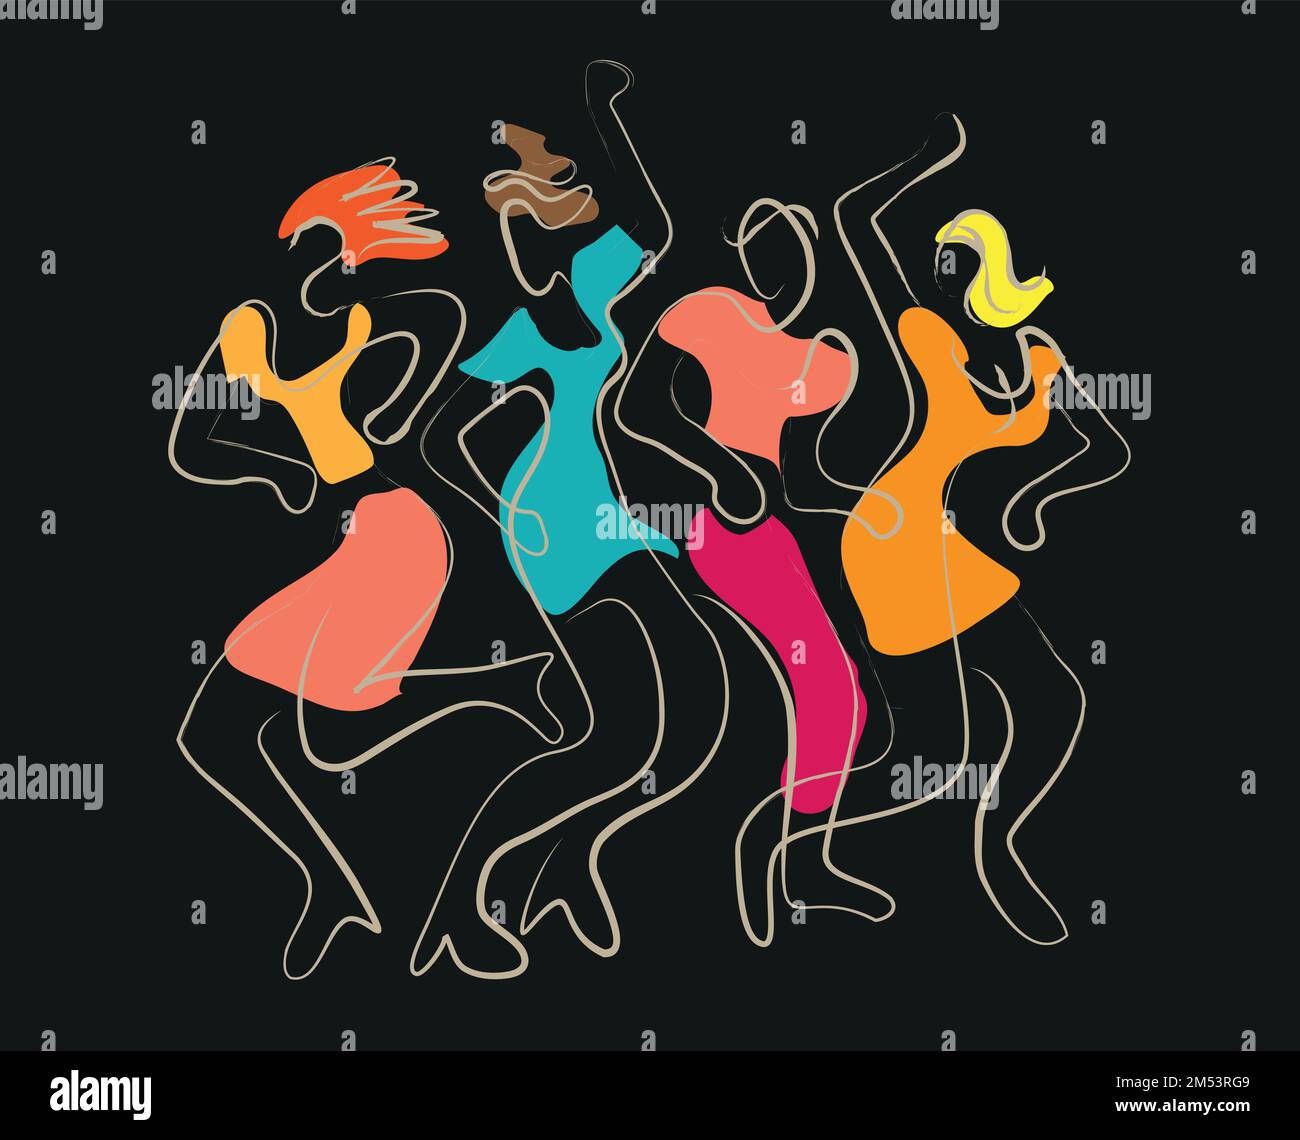 Junge Partyleute, die im Disco-Club tanzen, Linienkunst. Ausdrucksstarke, farbenfrohe Illustration von tanzenden Menschen auf schwarzem Hintergrund. Vektor verfügbar. Stock Vektor